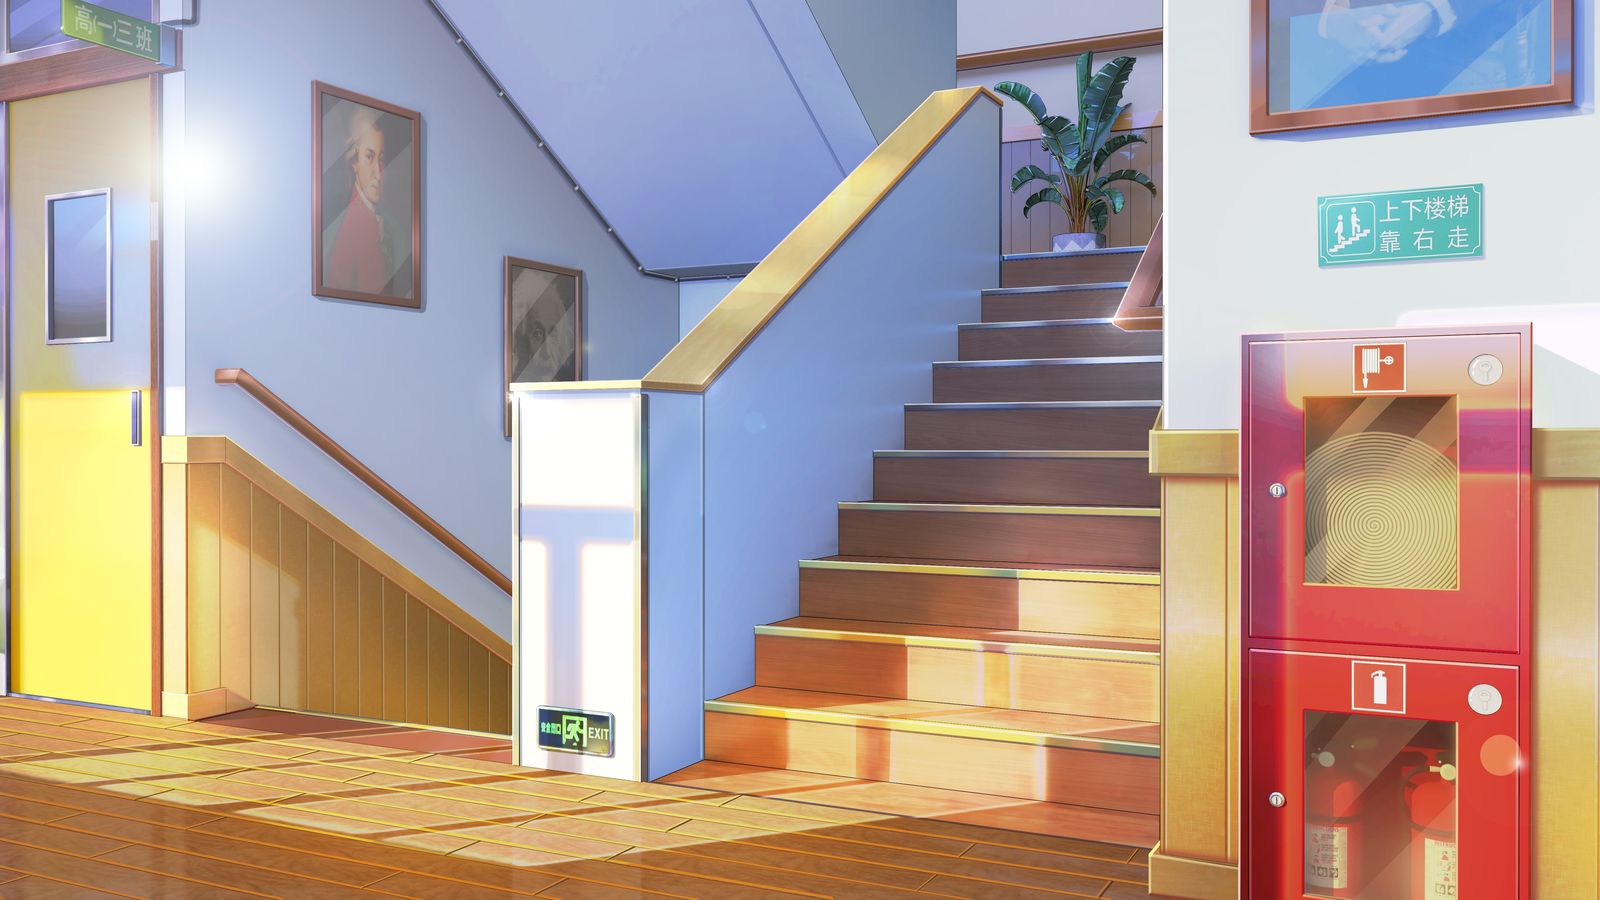 二次元场景-现代学校楼梯插画图片壁纸